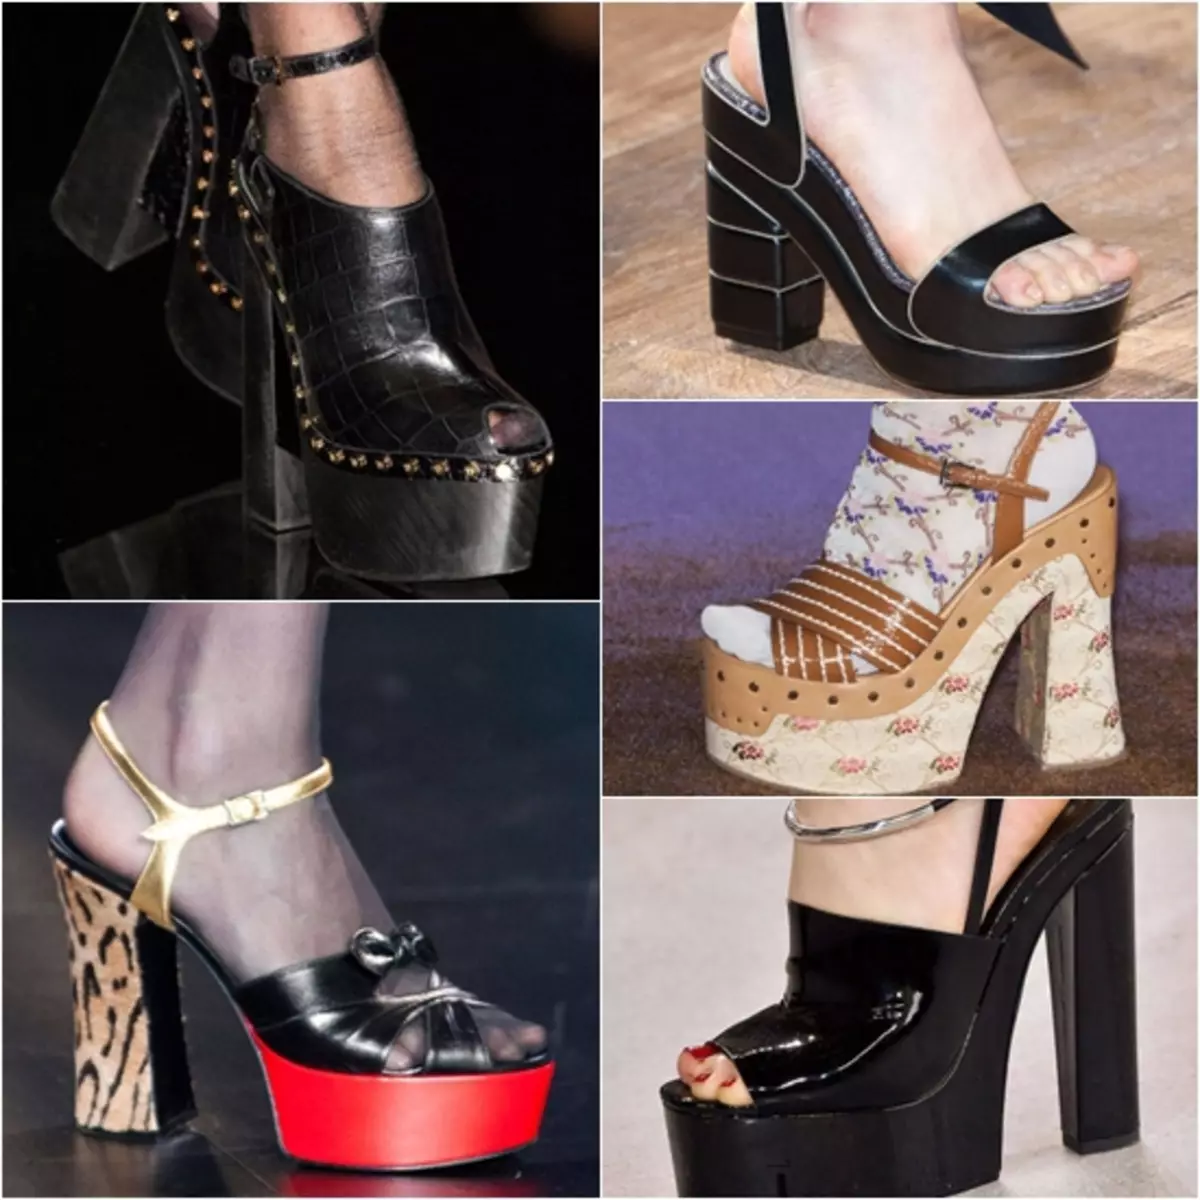 Загварлаг эмэгтэйчүүдийн гутал 2013 оны зуны улиралд 2015: Загварууд нь загварт загварлаг зургууд байх болно 117563_5